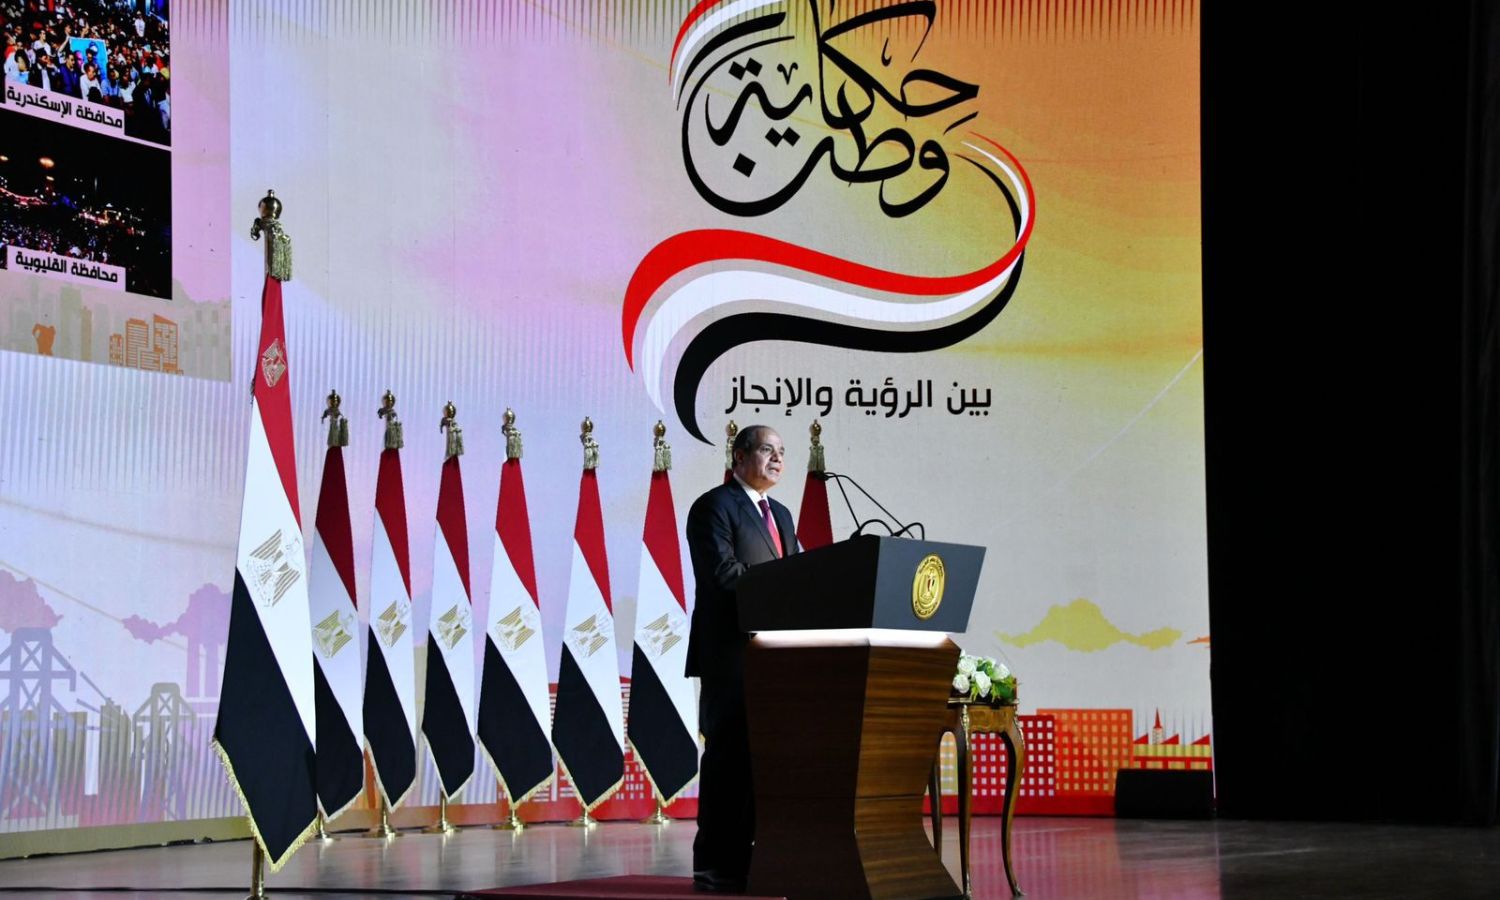 توجه اتهامات للرئيس المصري عبد الفتاح السيسي بعرقلة حصول مرشحي المعارضة على التوكيلات اللازمة للترشح 2 من تشرين الأول 2023 (الأهرام)